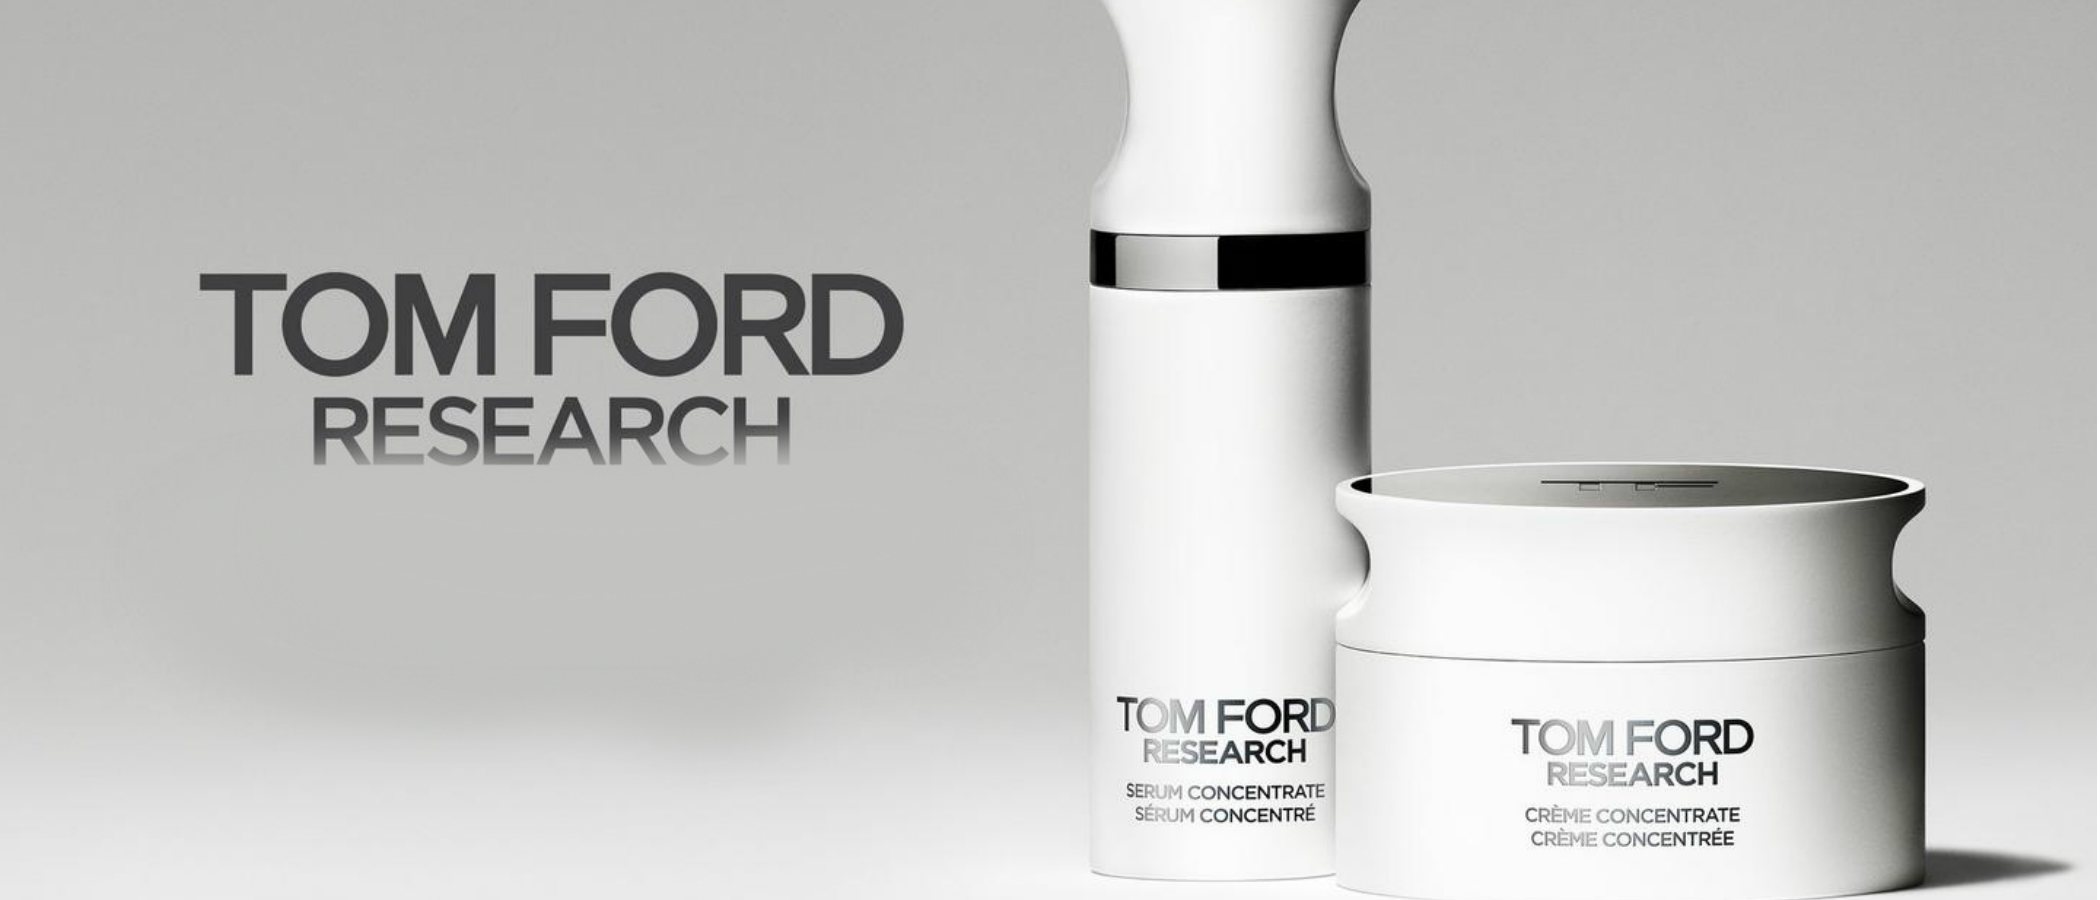 'Tom Ford Research', la exclusiva línea de productos para el cuidado de la piel de Tom Ford